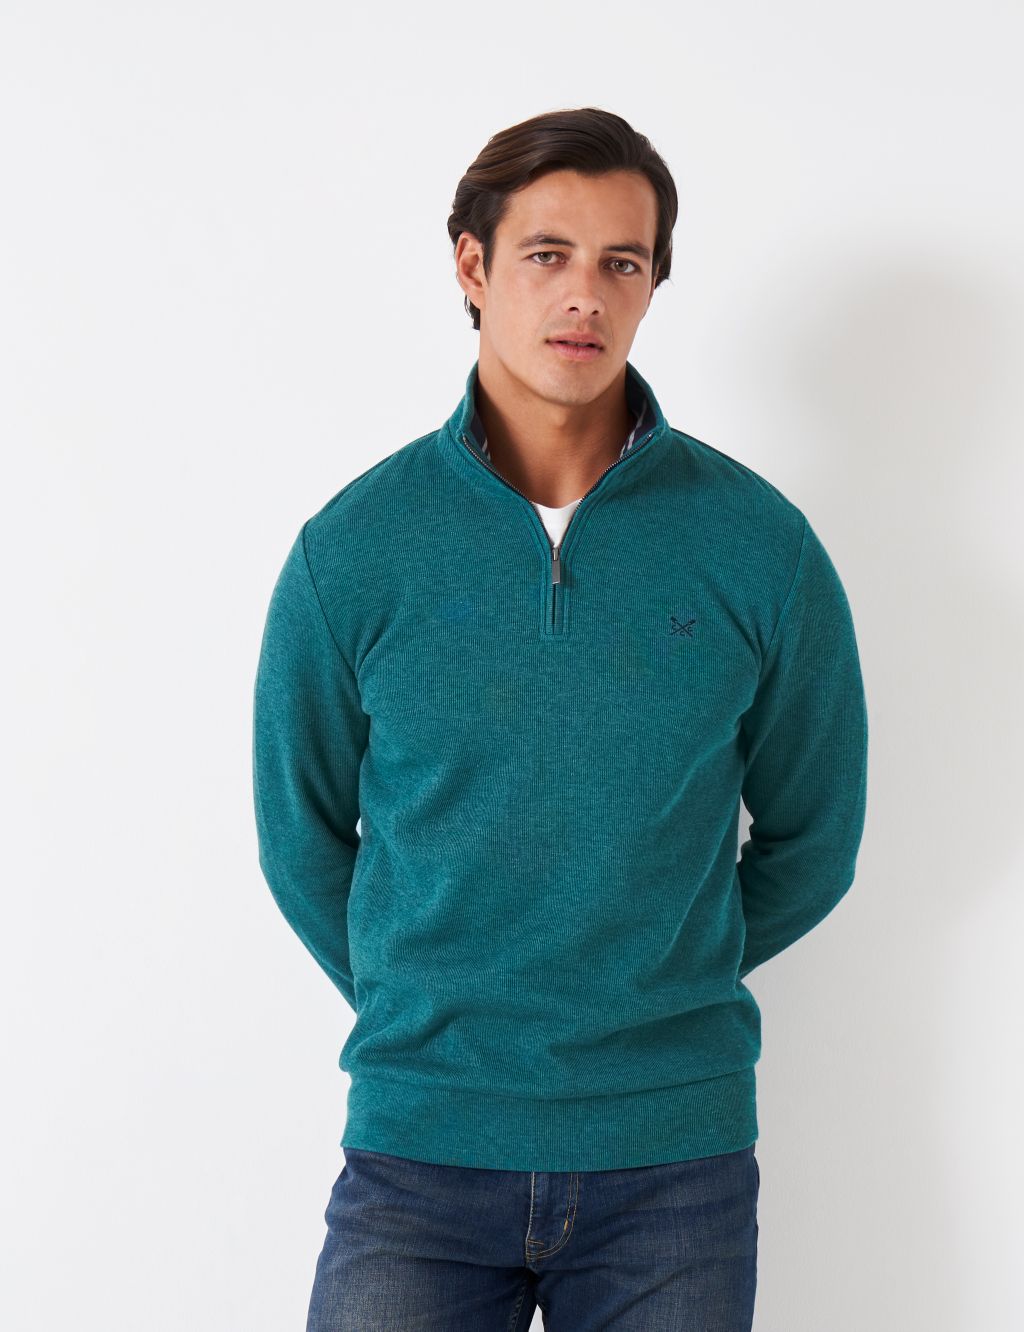 Shop Men’s Half-Zip Sweatshirts & Hoodies | M&S